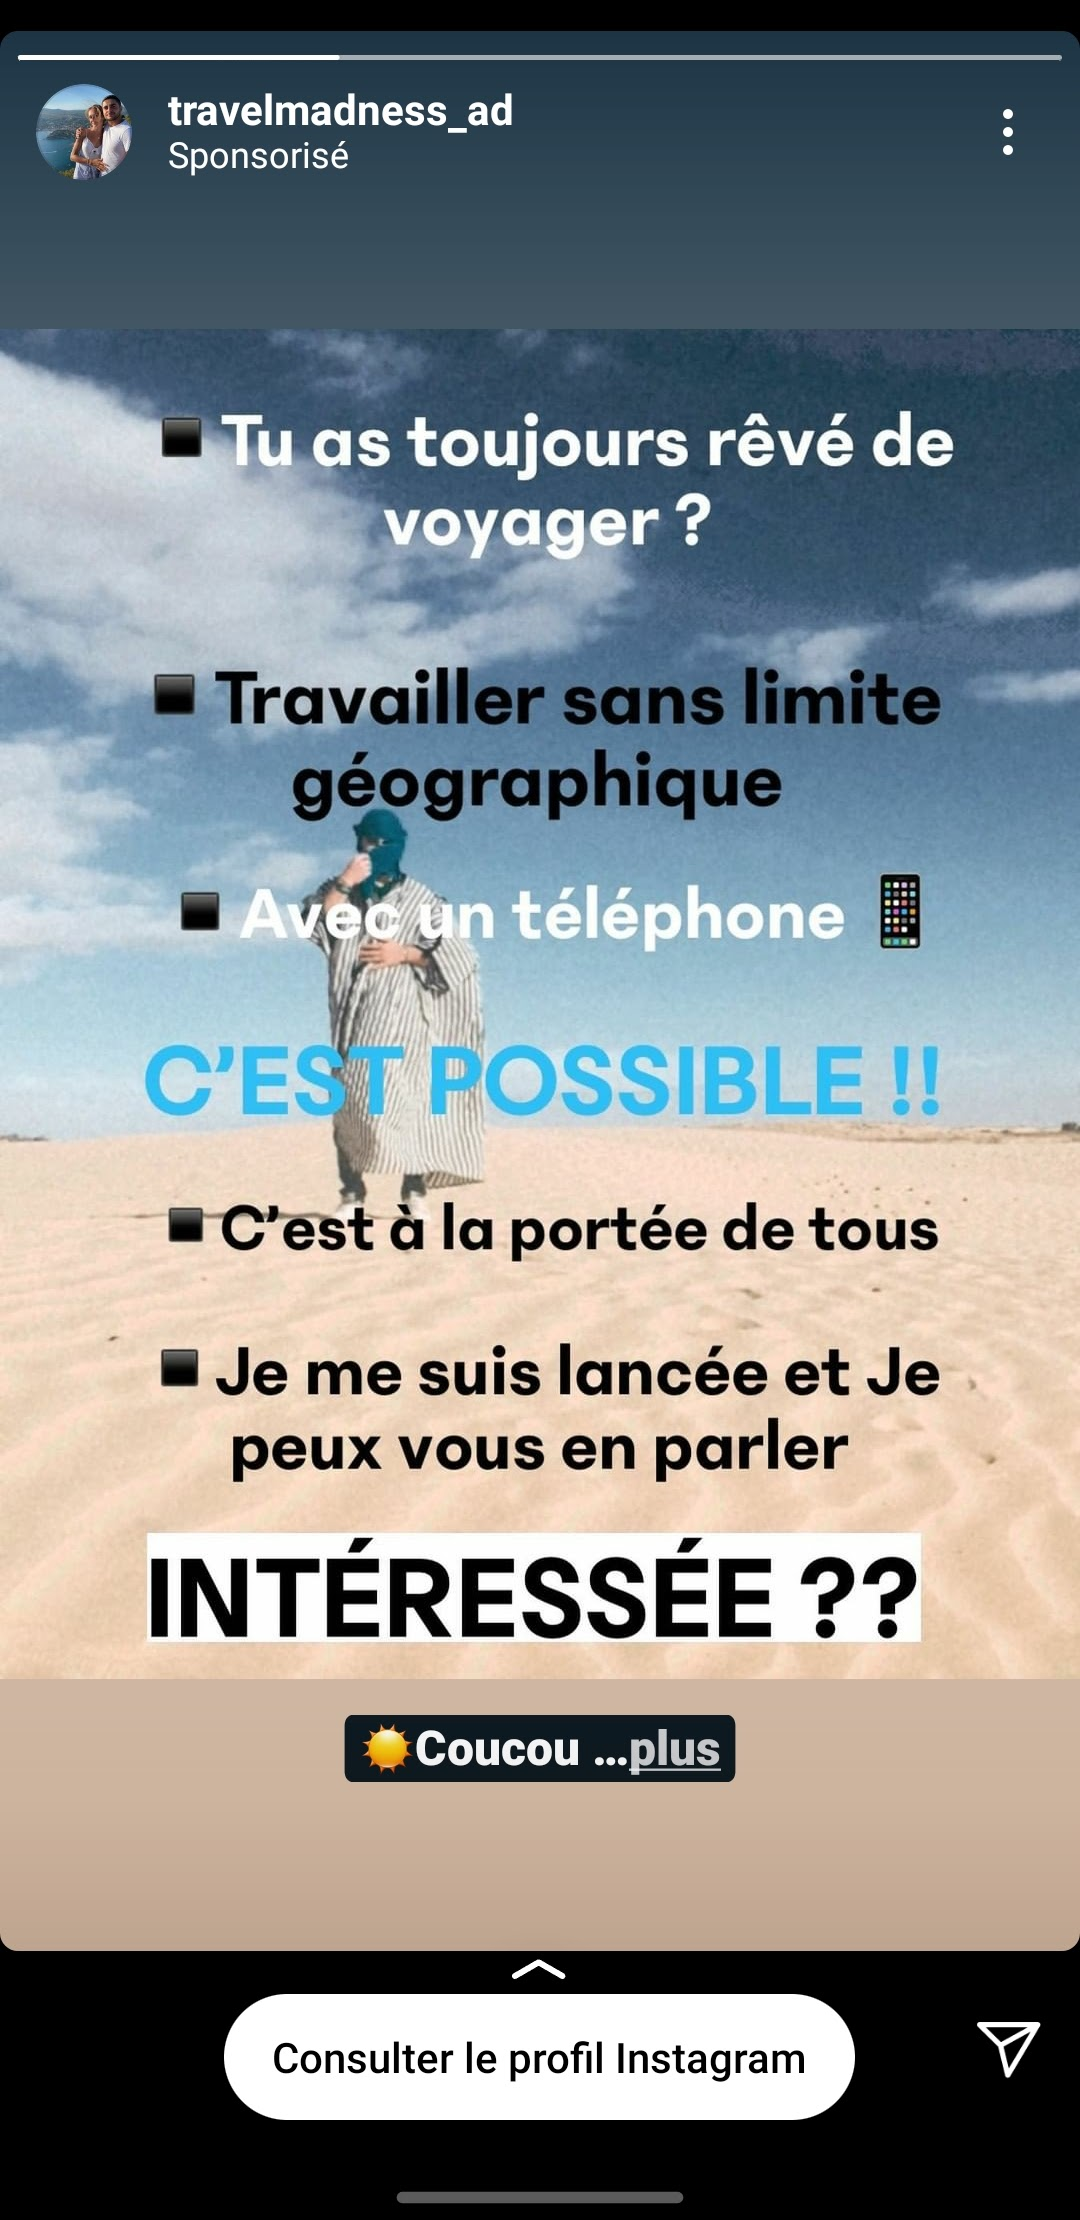 Capture d'écran Instagram du 9 avril 2021 pour "Travailler sans limite géographique" "Avec un téléphone"